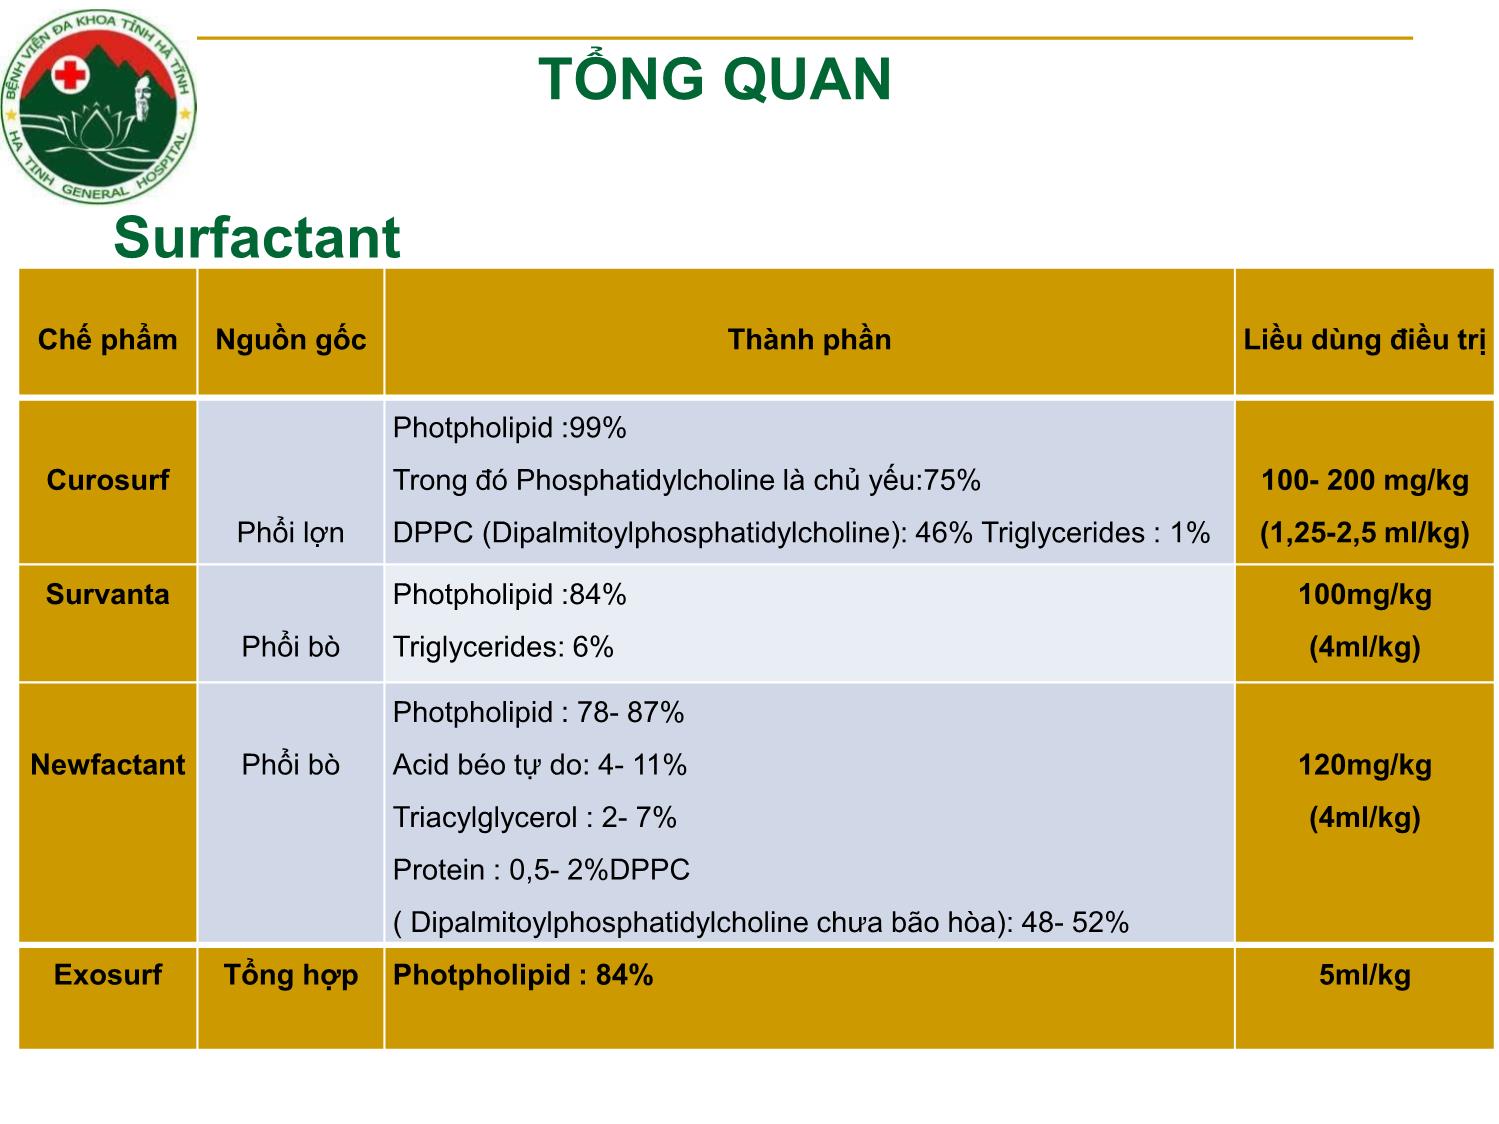 Bài giảng Nghiên cứu điều trị bệnh màng trong ở trẻ đẻ non bằng liệu pháp surfactant tại khoa nhi - Bệnh viện đa khoa tỉnh Hà Tĩnh 2014-2018 trang 6